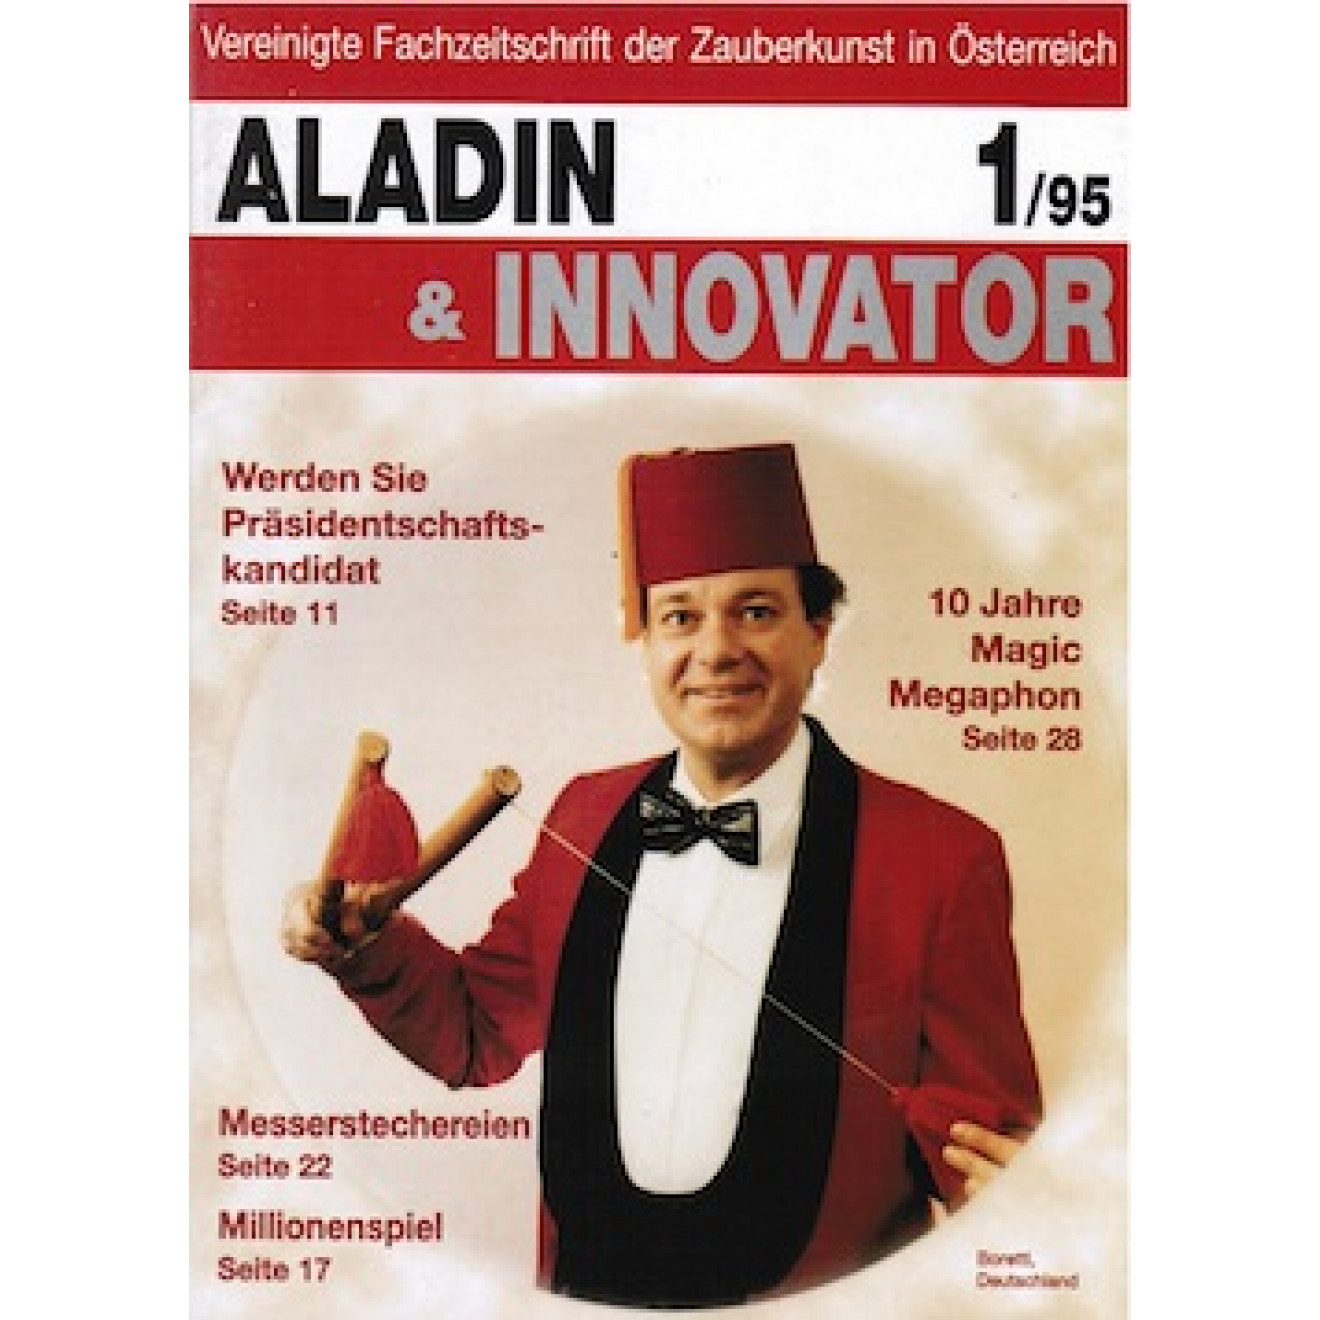 Aladin & Innovator, Jahrgang 1995 (gelocht)